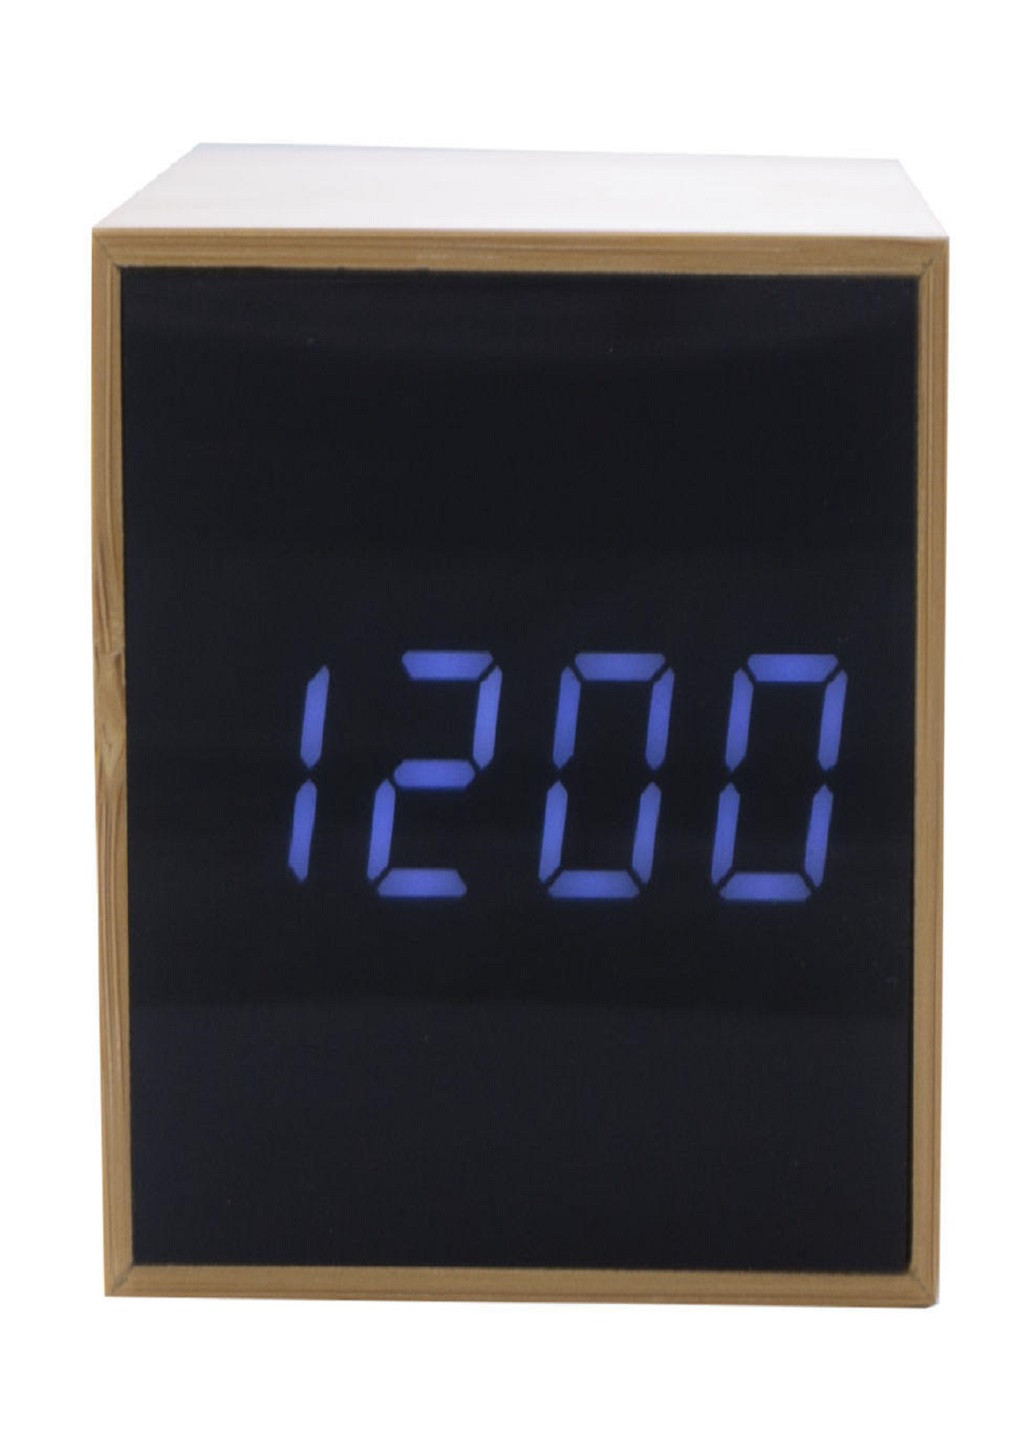 Настільний електронний світлодіодний годинник TS-M01 з відображенням температури VTech (259505648)